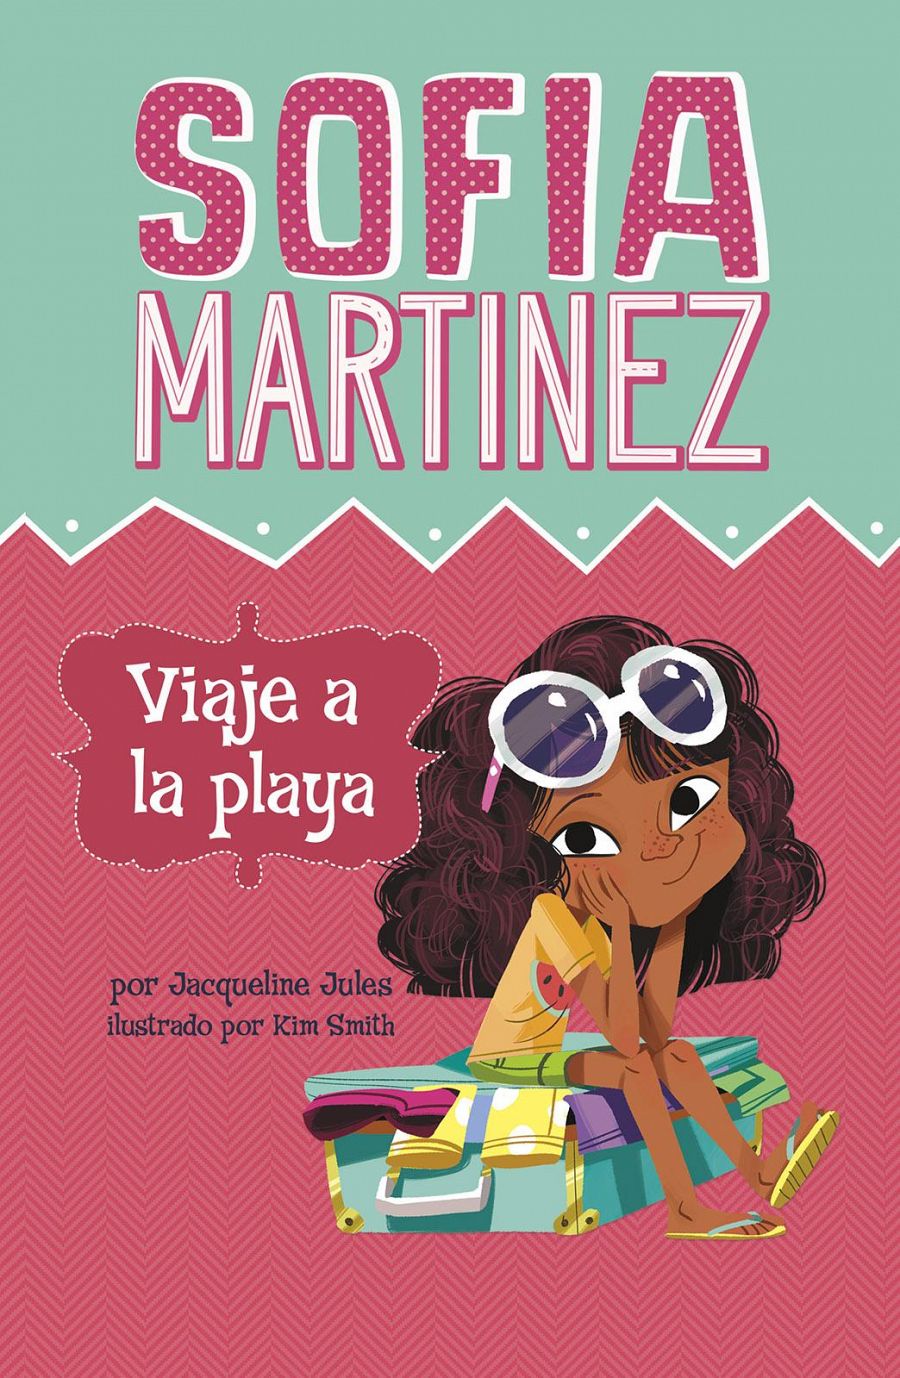 Sofia Martinez Viaje a la playa tapa del libro